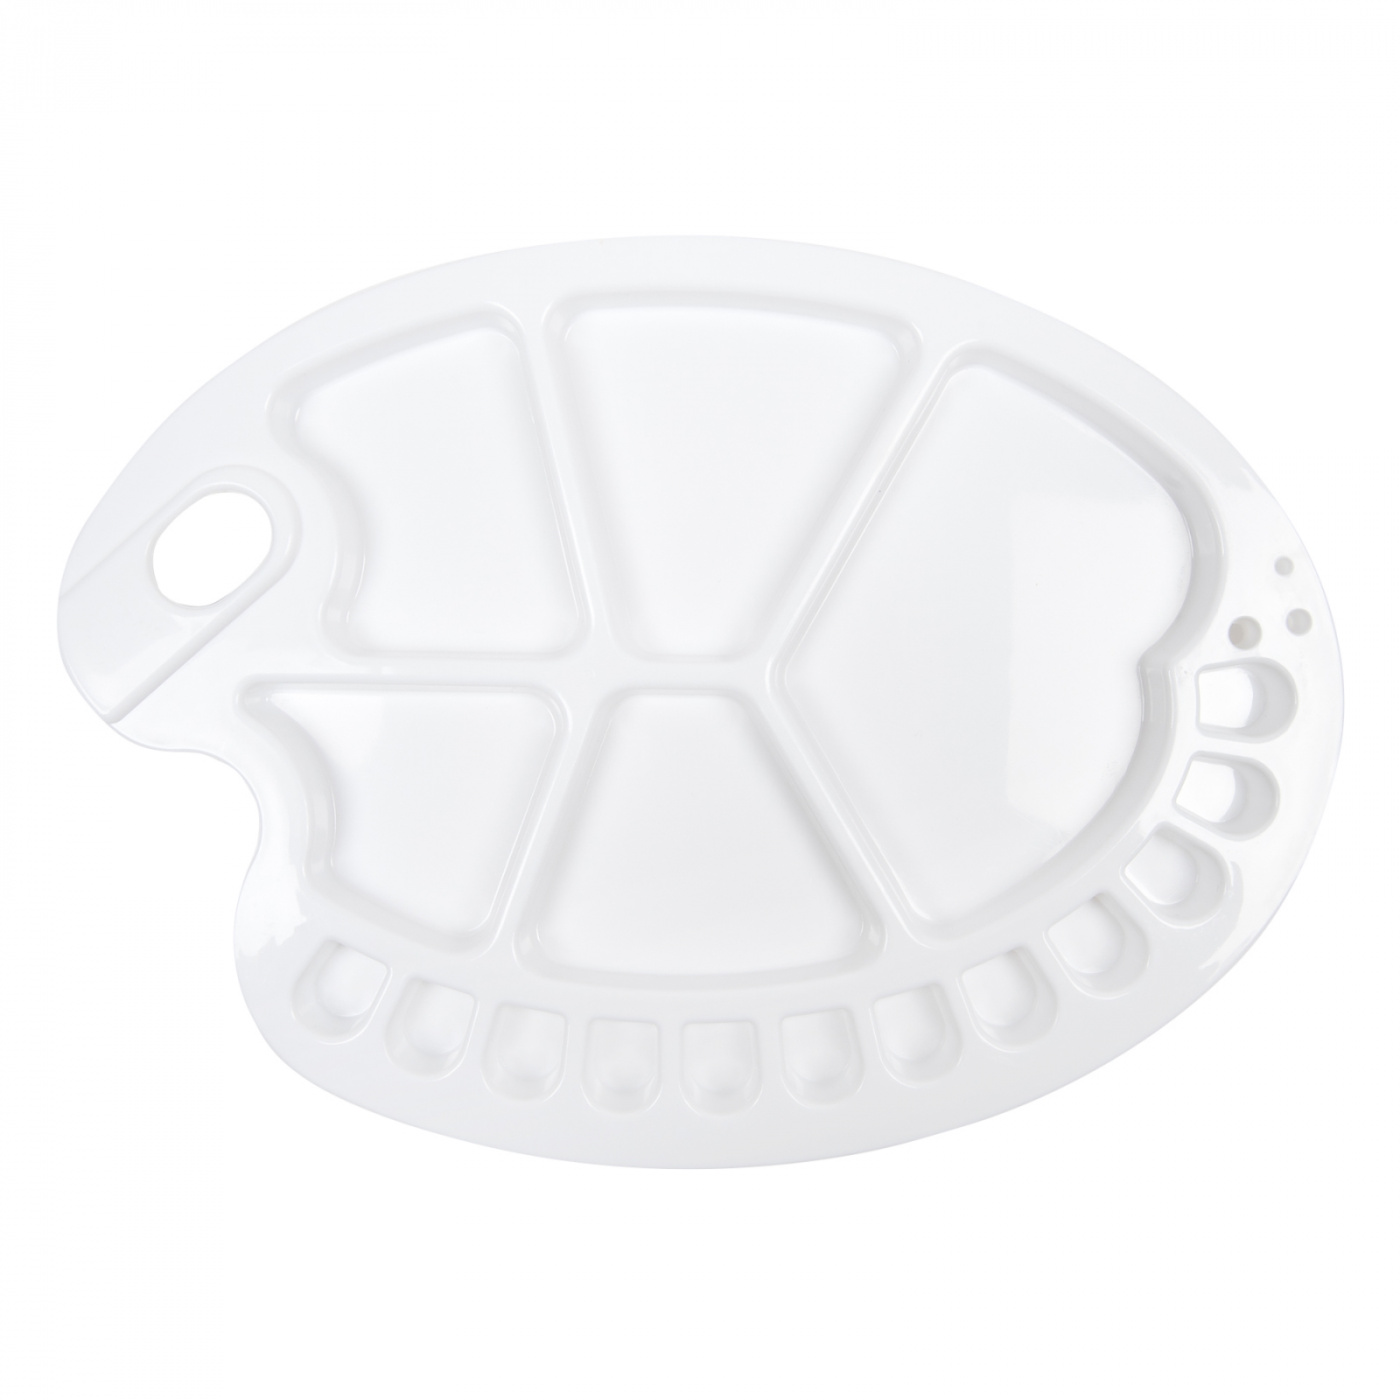 Палитра пластик овальная Pinax ,17 углублений палитра пластиковая pinax с крышкой и ячейками для кювет малая